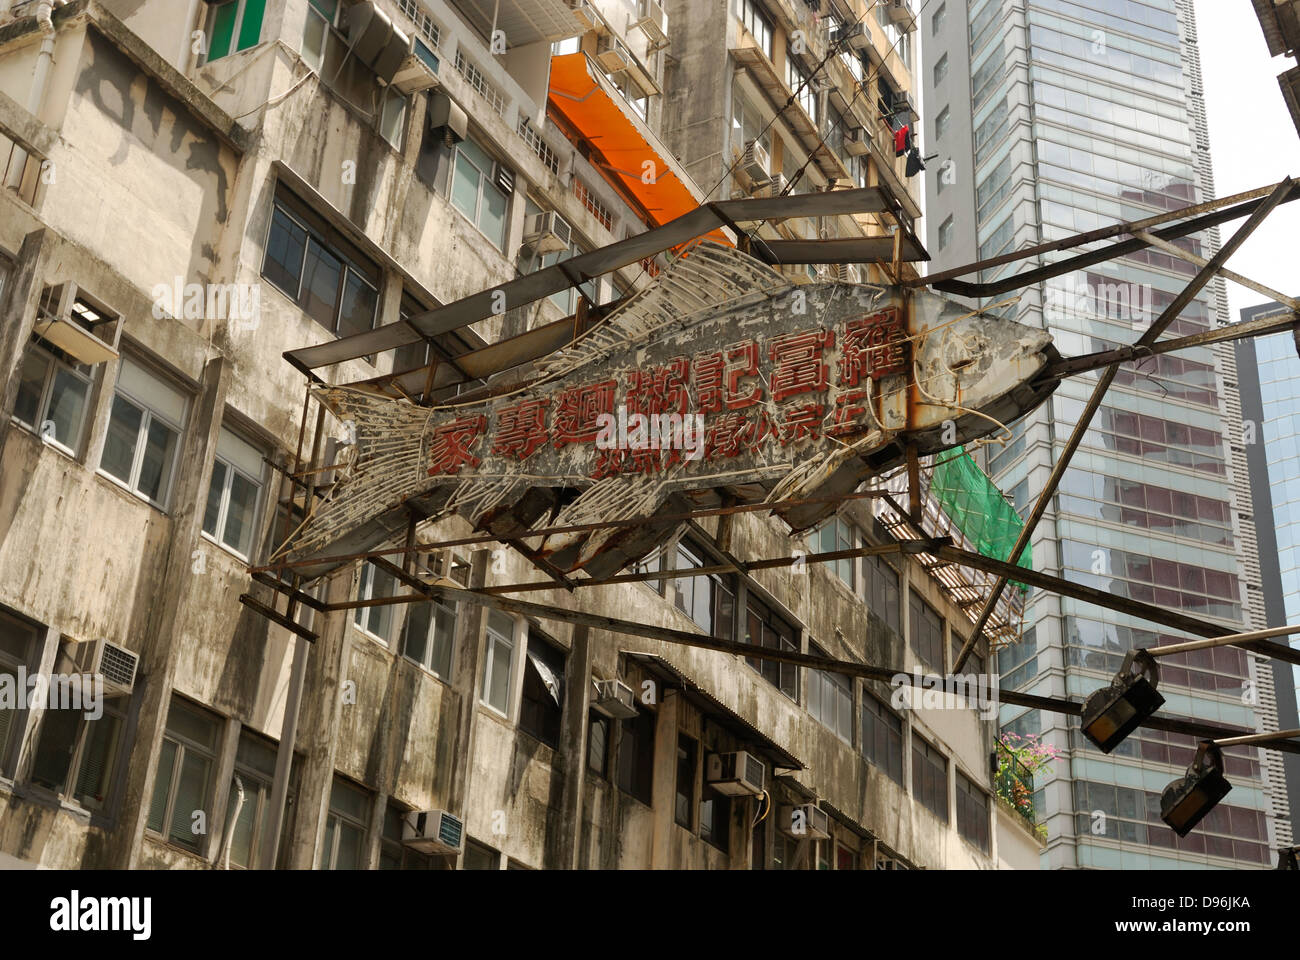 Alter Fisch melden Sie Hong Kong China Stockfoto